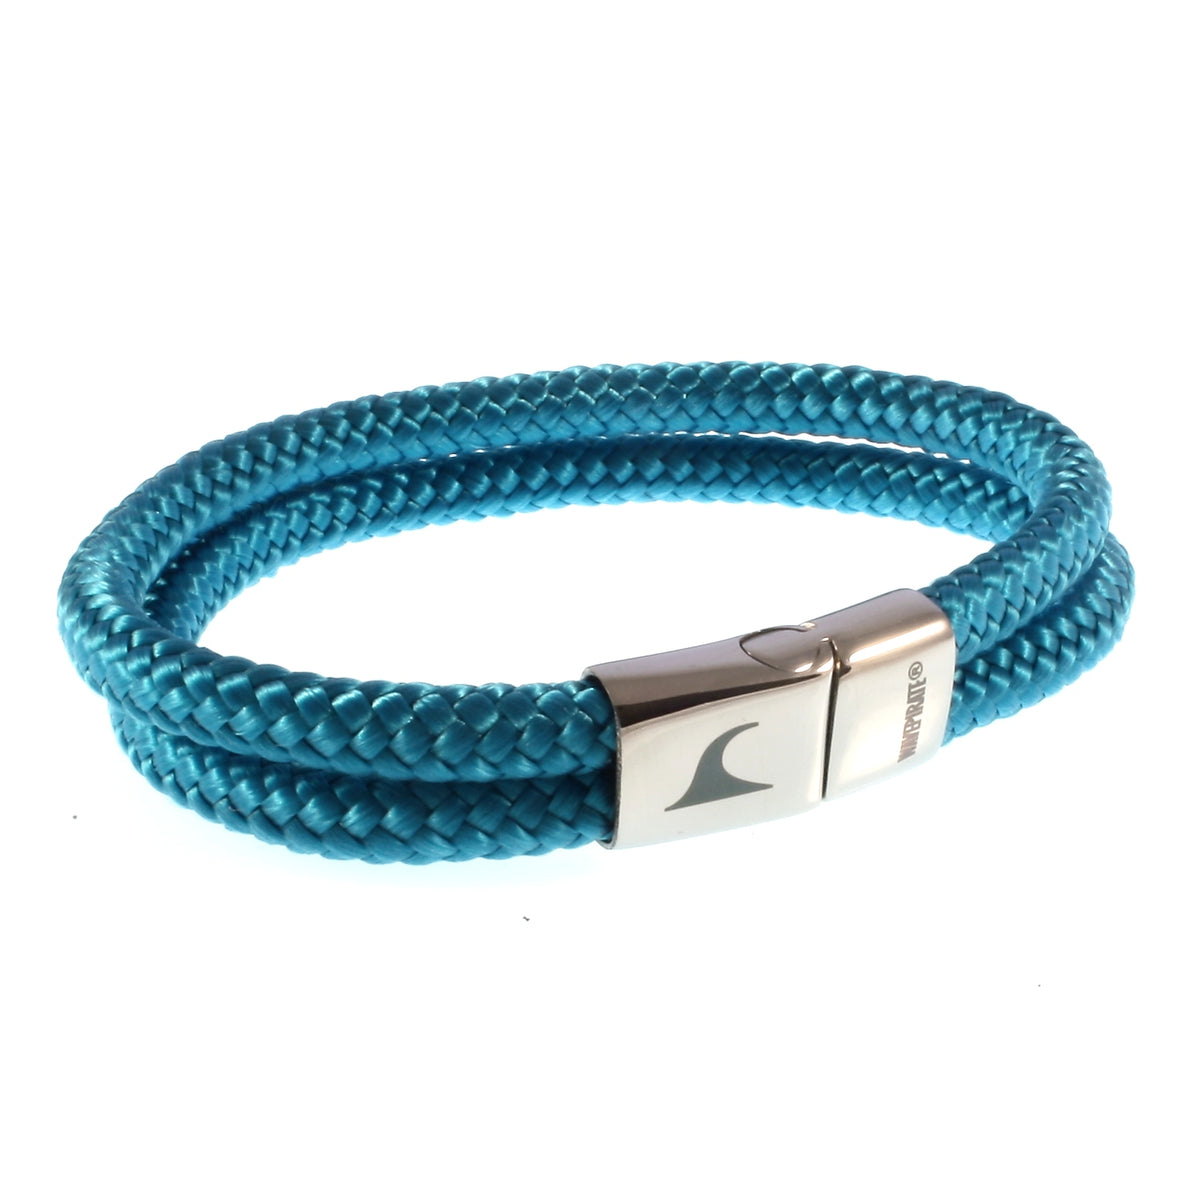 Herren-Segeltau-Armband-Tarifa-blau-geflochten-Edelstahlverschluss-vorn-wavepirate-shop-st